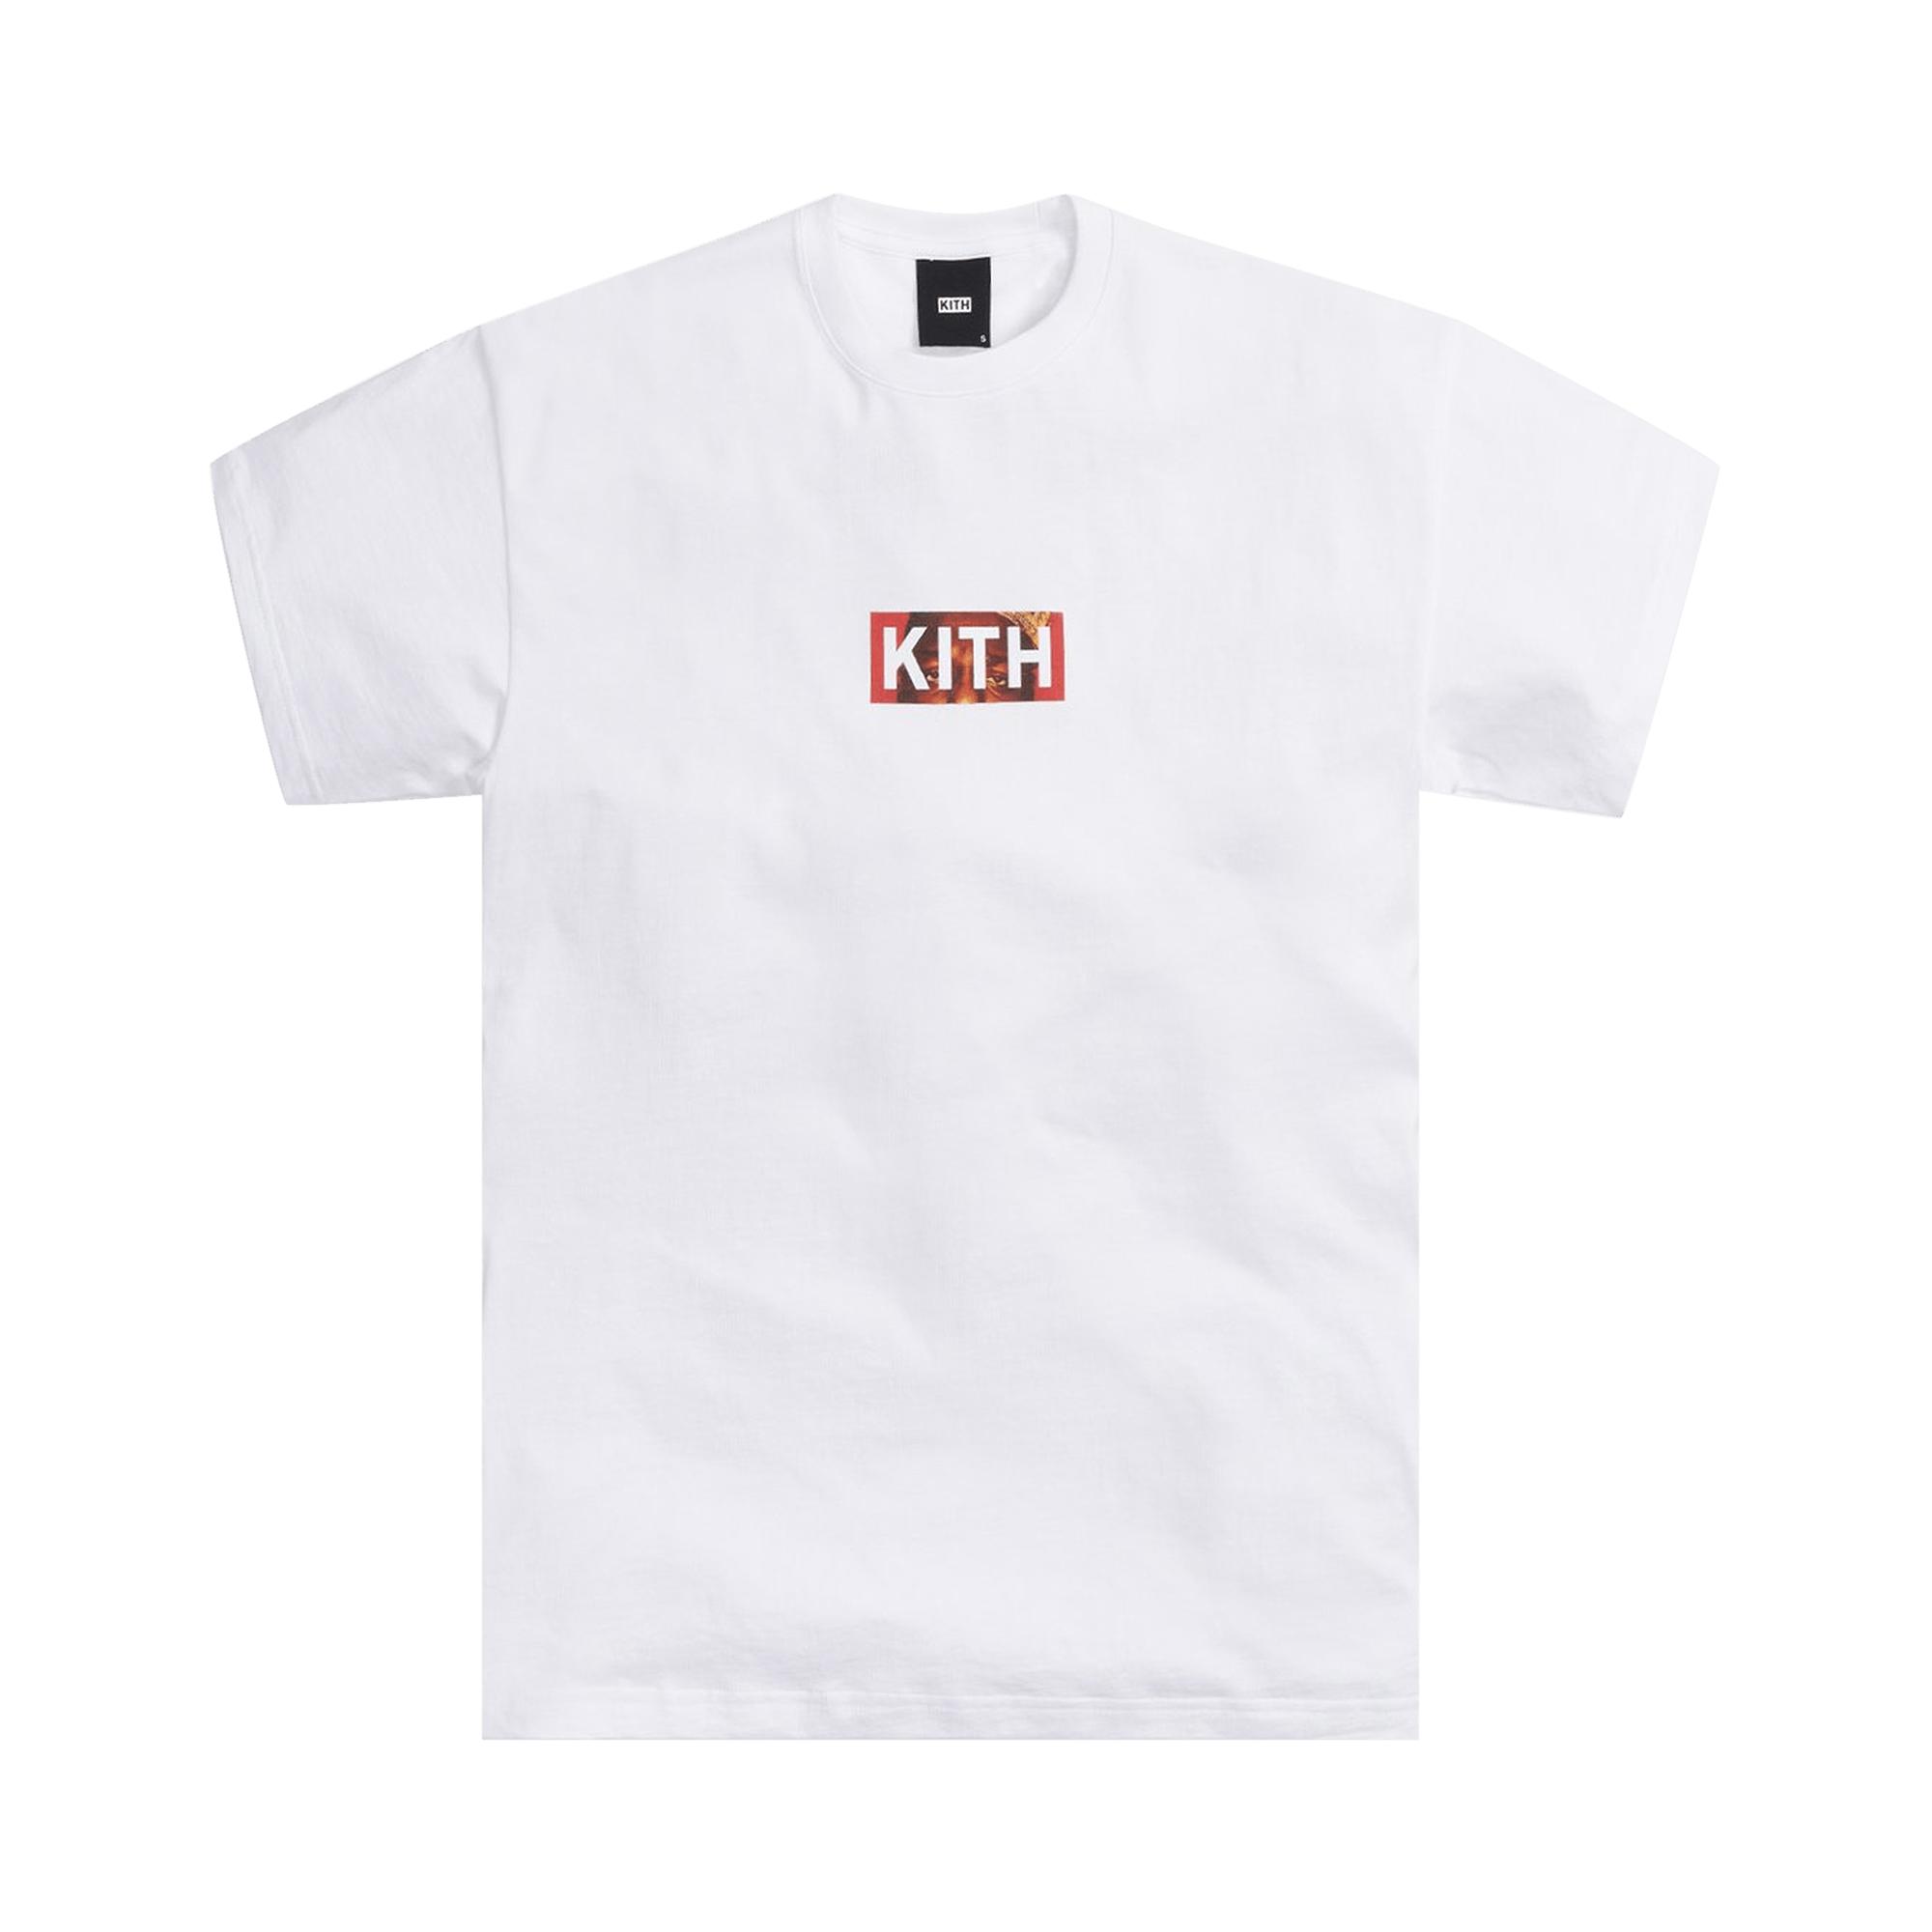 Kith Logos | lupon.gov.ph